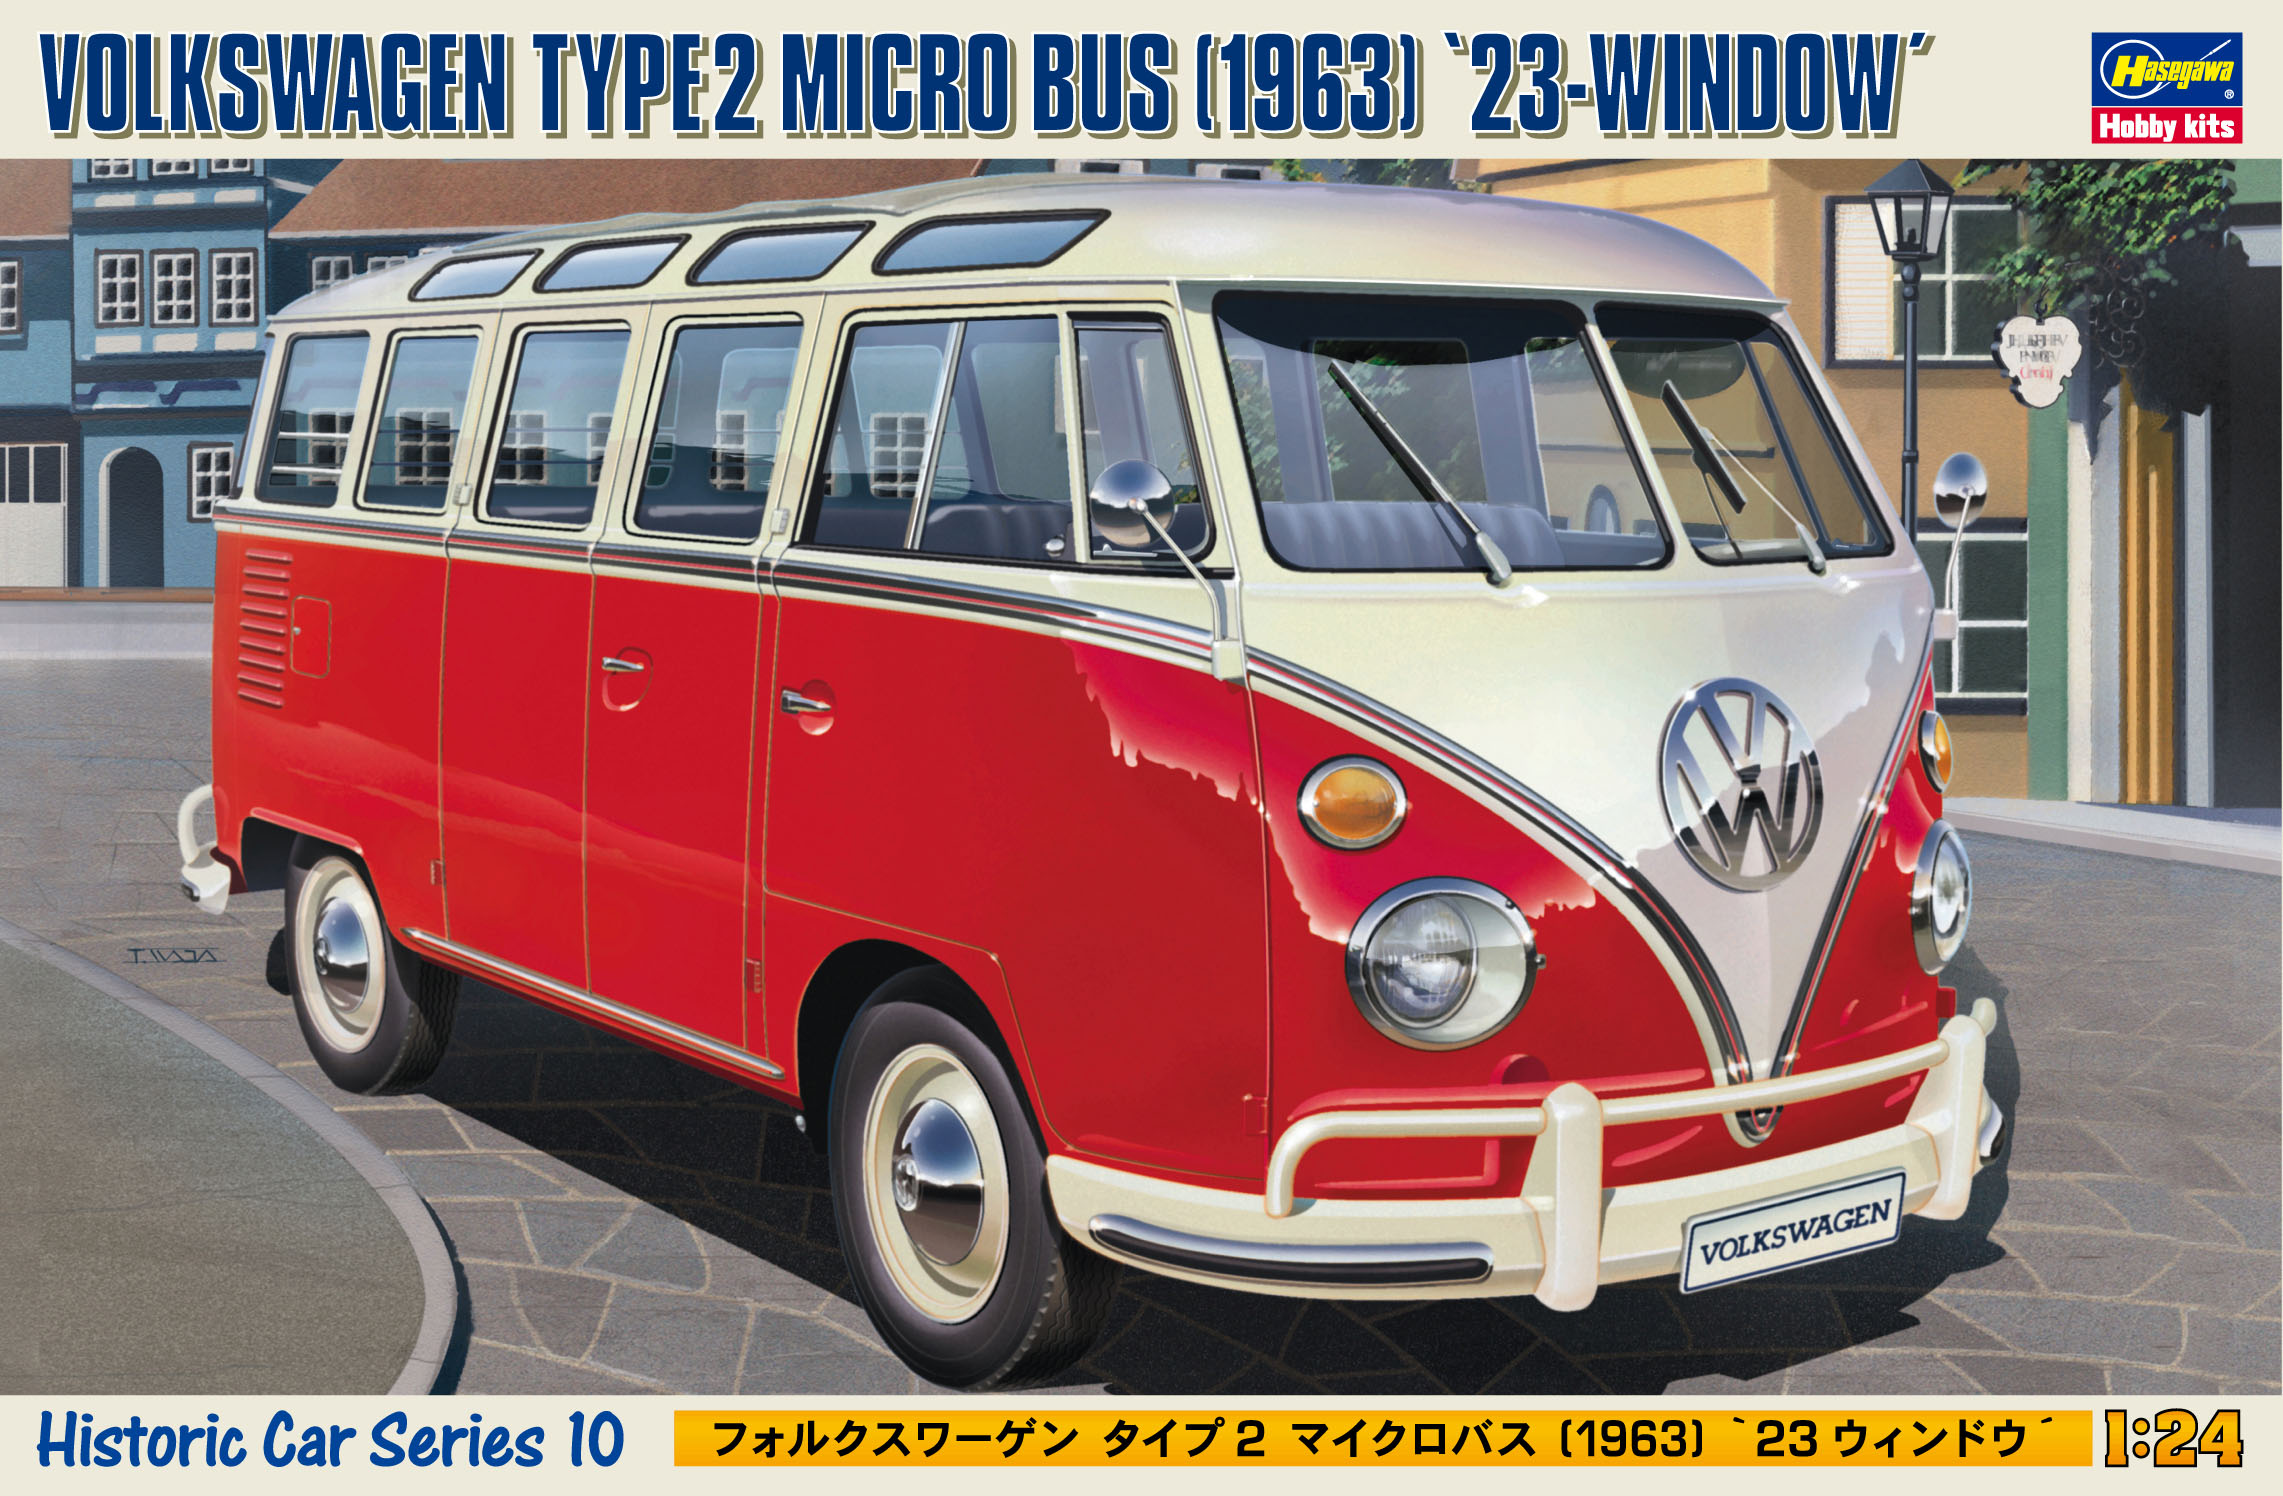 Hasegawa 1/24 1/24 Volkswagen Type 2 Micro Bus 1963 23-Window HC10 